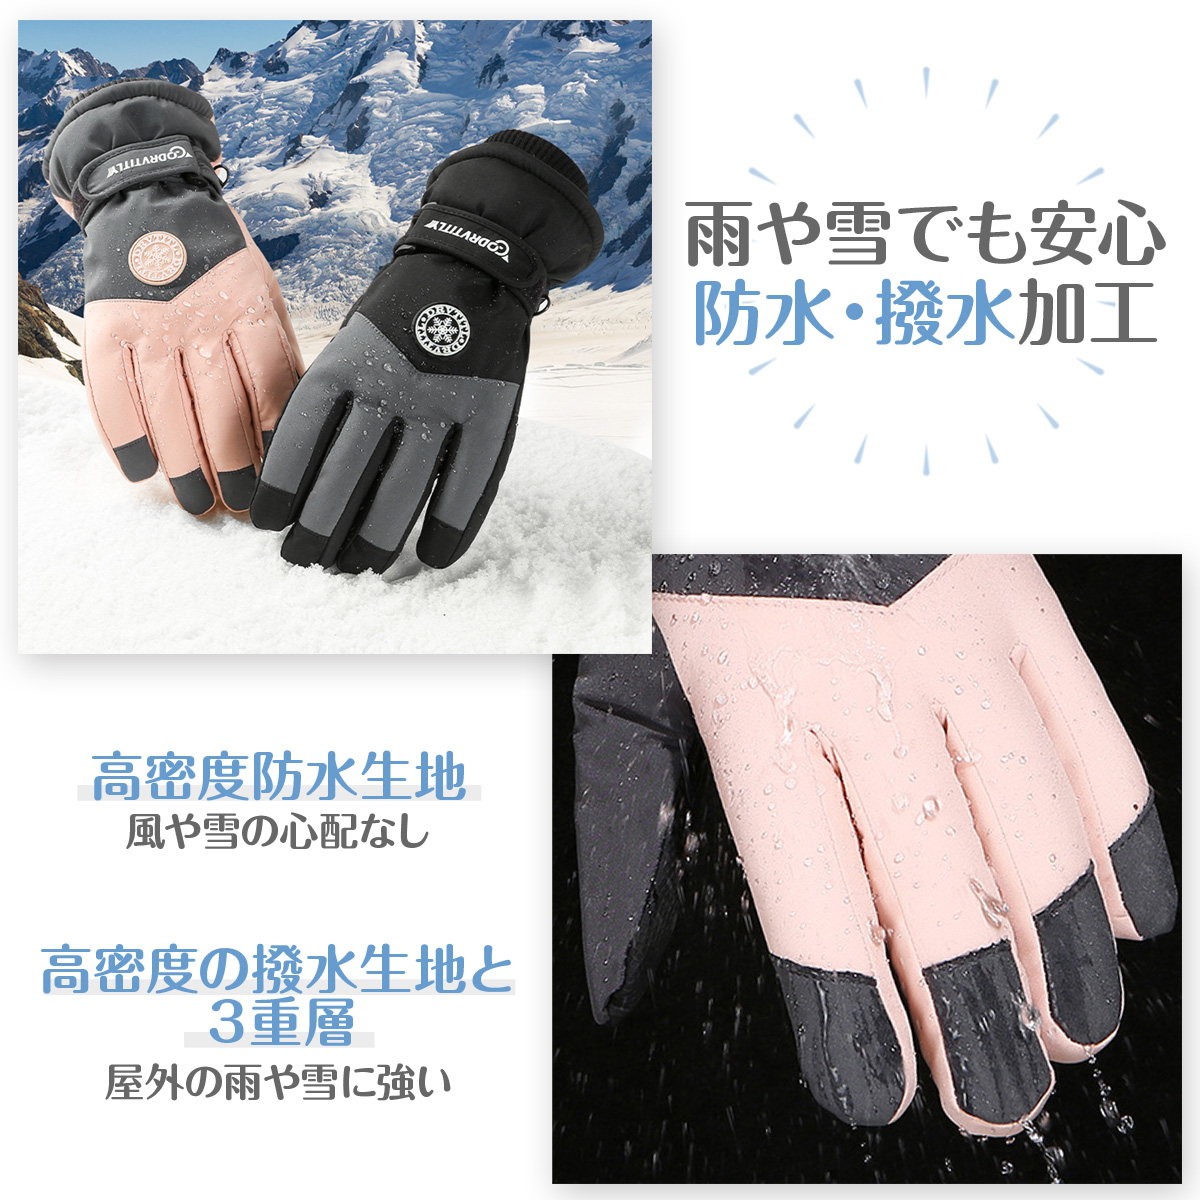  лыжи перчатка перчатки мужской женский водонепроницаемый защищающий от холода смартфон соответствует сноуборд мотоцикл велосипед предотвращение скольжения водоотталкивающий 